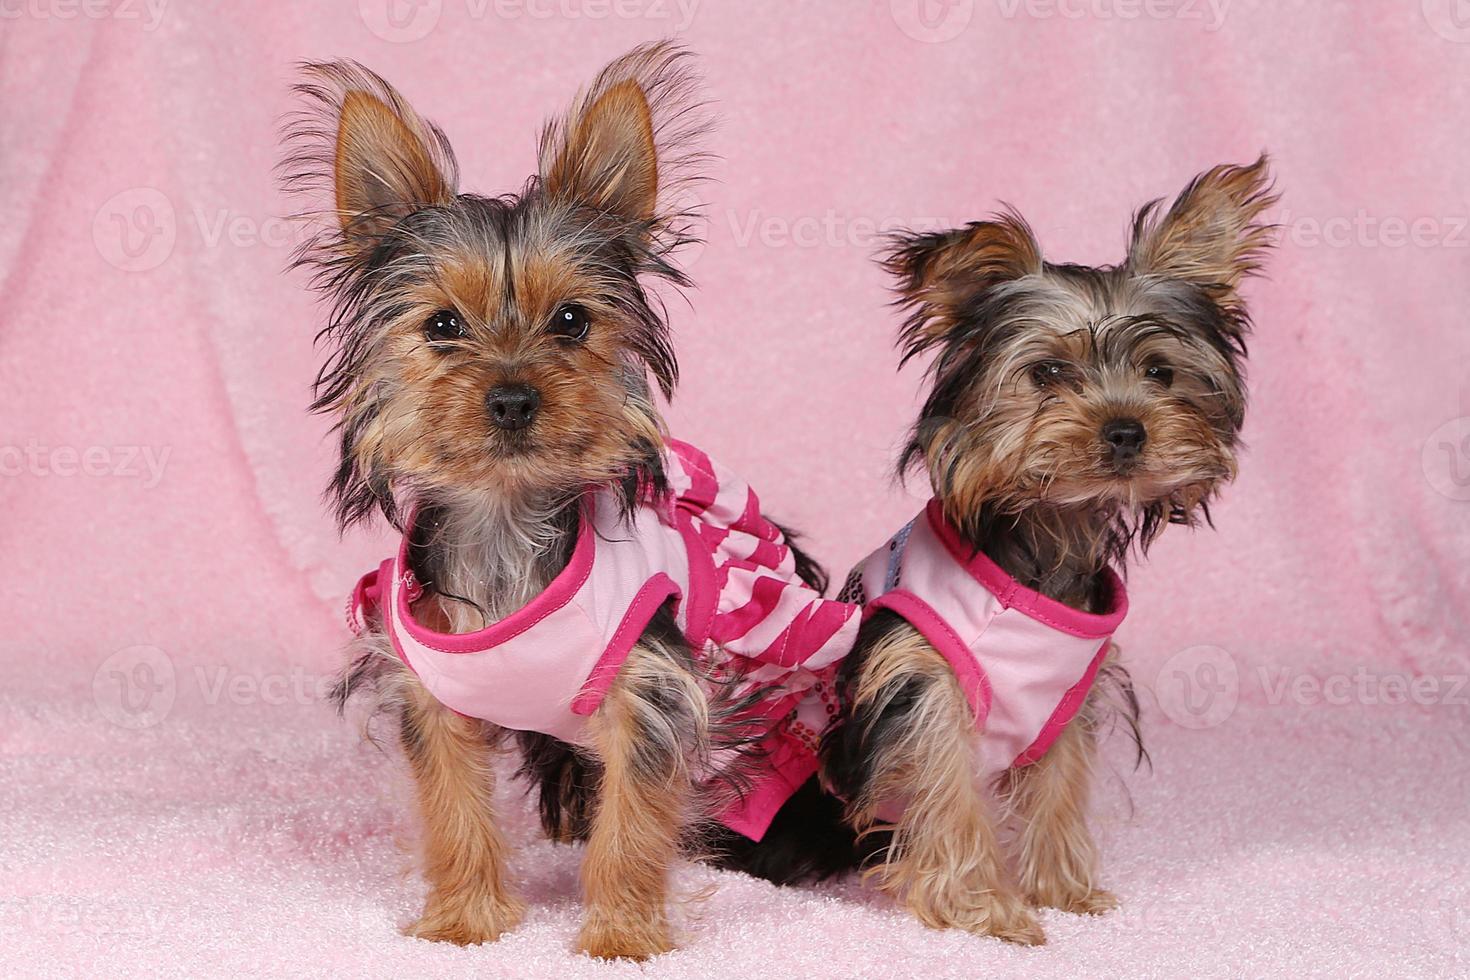 cuccioli di yorkshire terrier vestiti di rosa foto